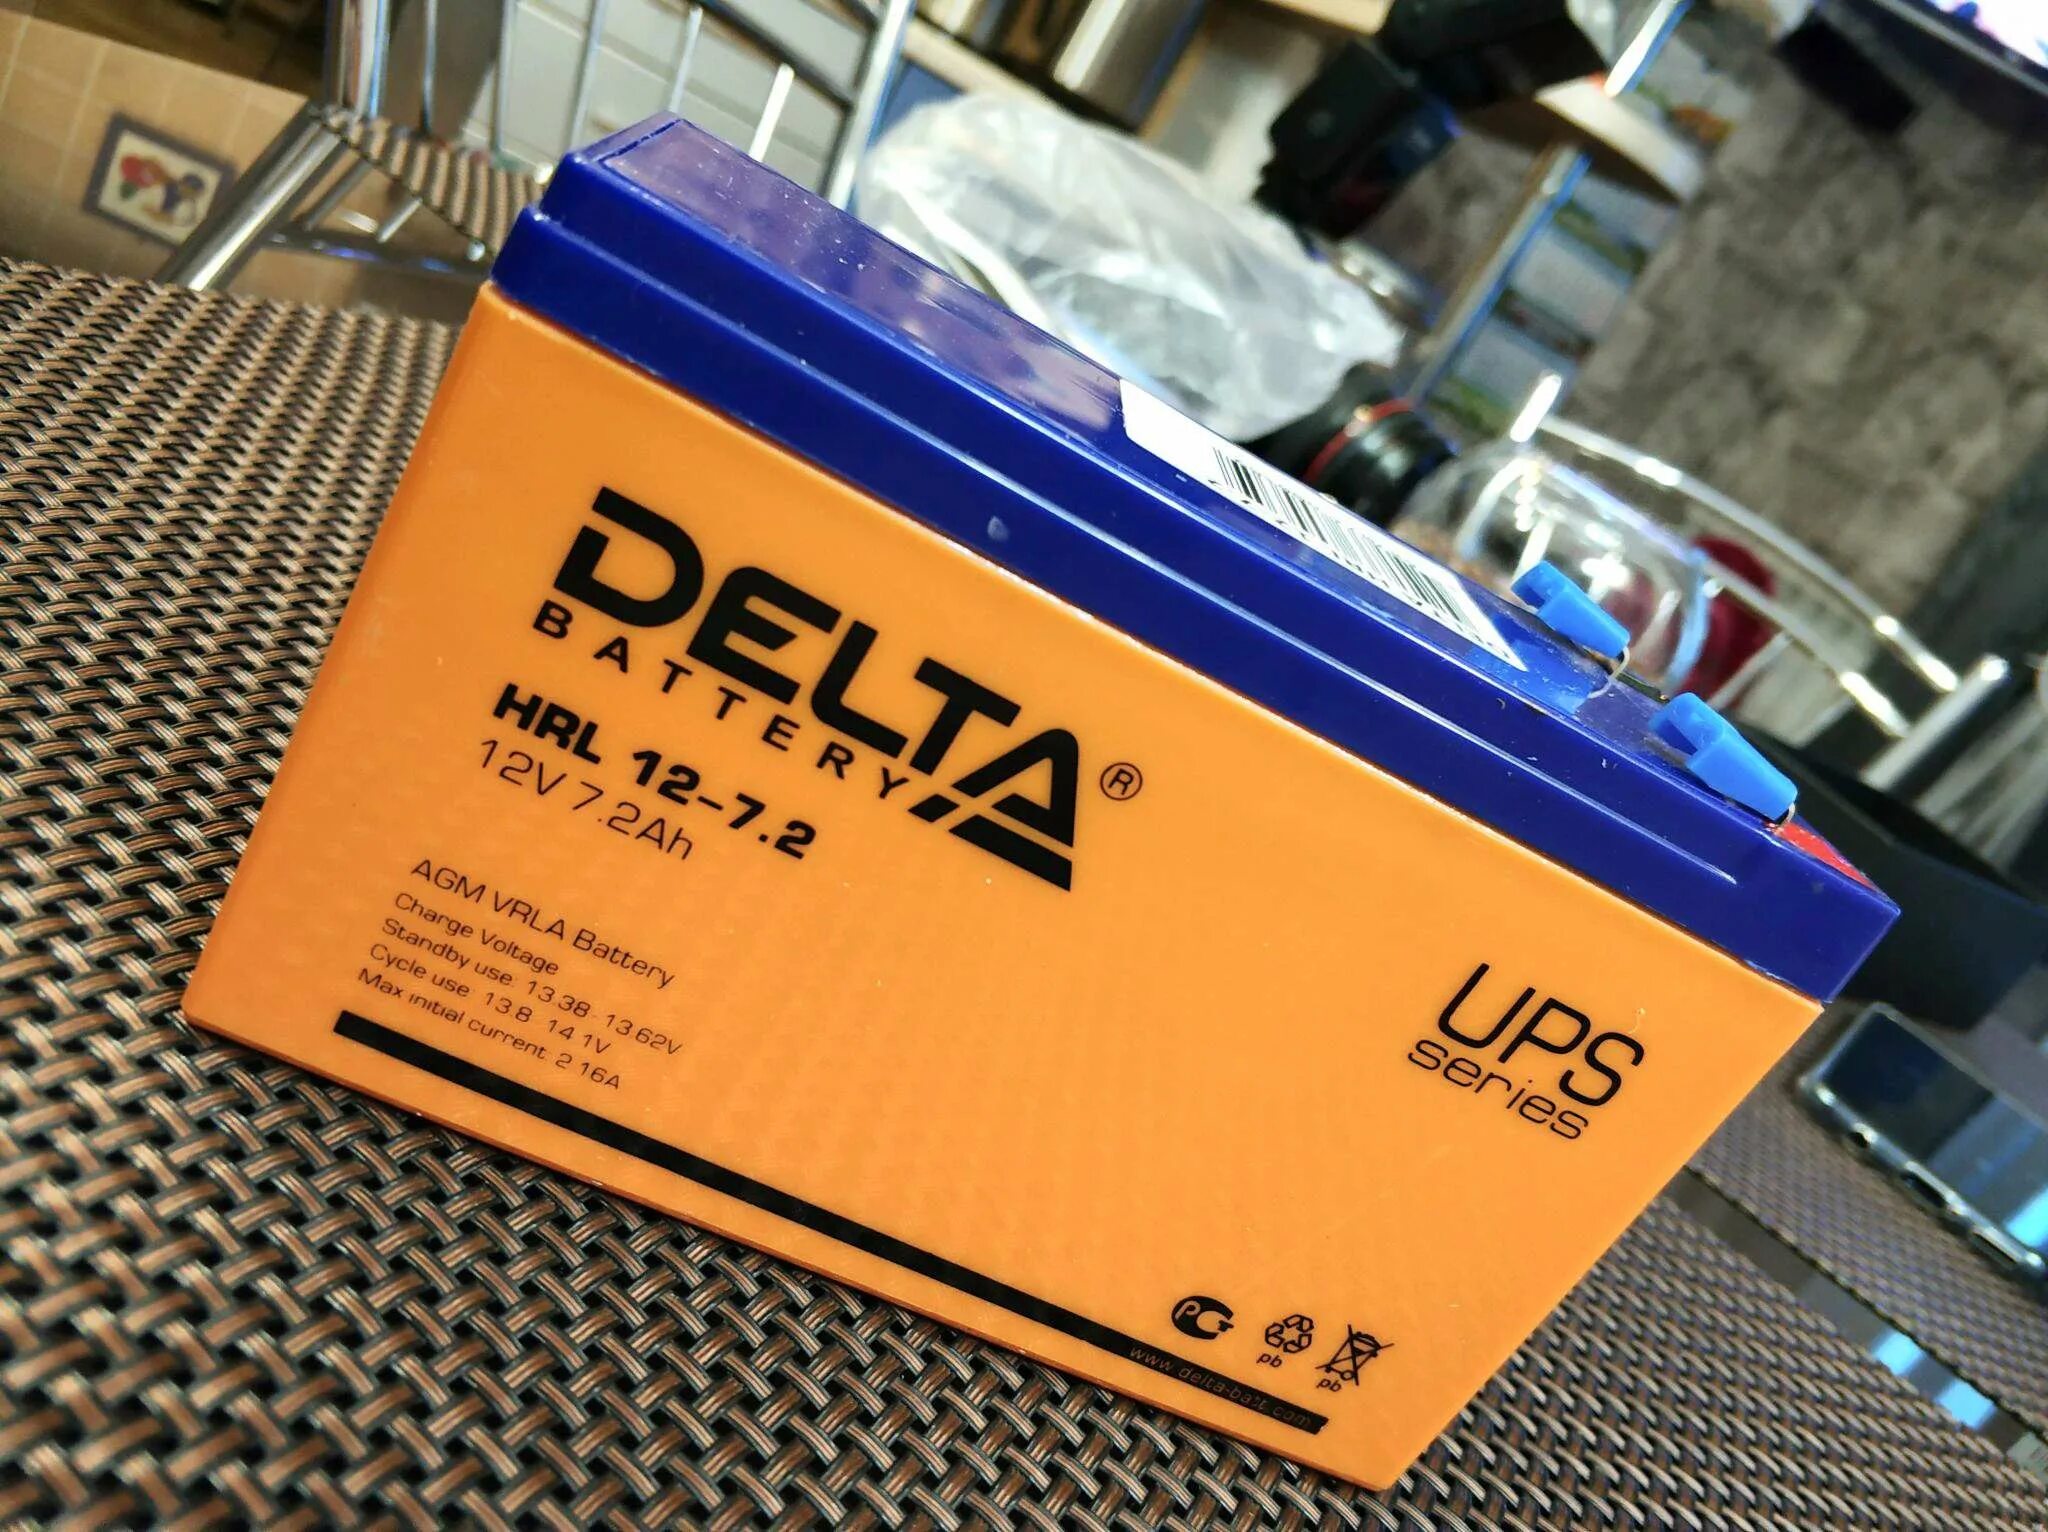 Delta hrl12-7.2 х. Батарея Delta HRL 12-12. Батарея Delta HRL 12-7.2 X. Аккумуляторная батарея Delta HRL 12-45 X.